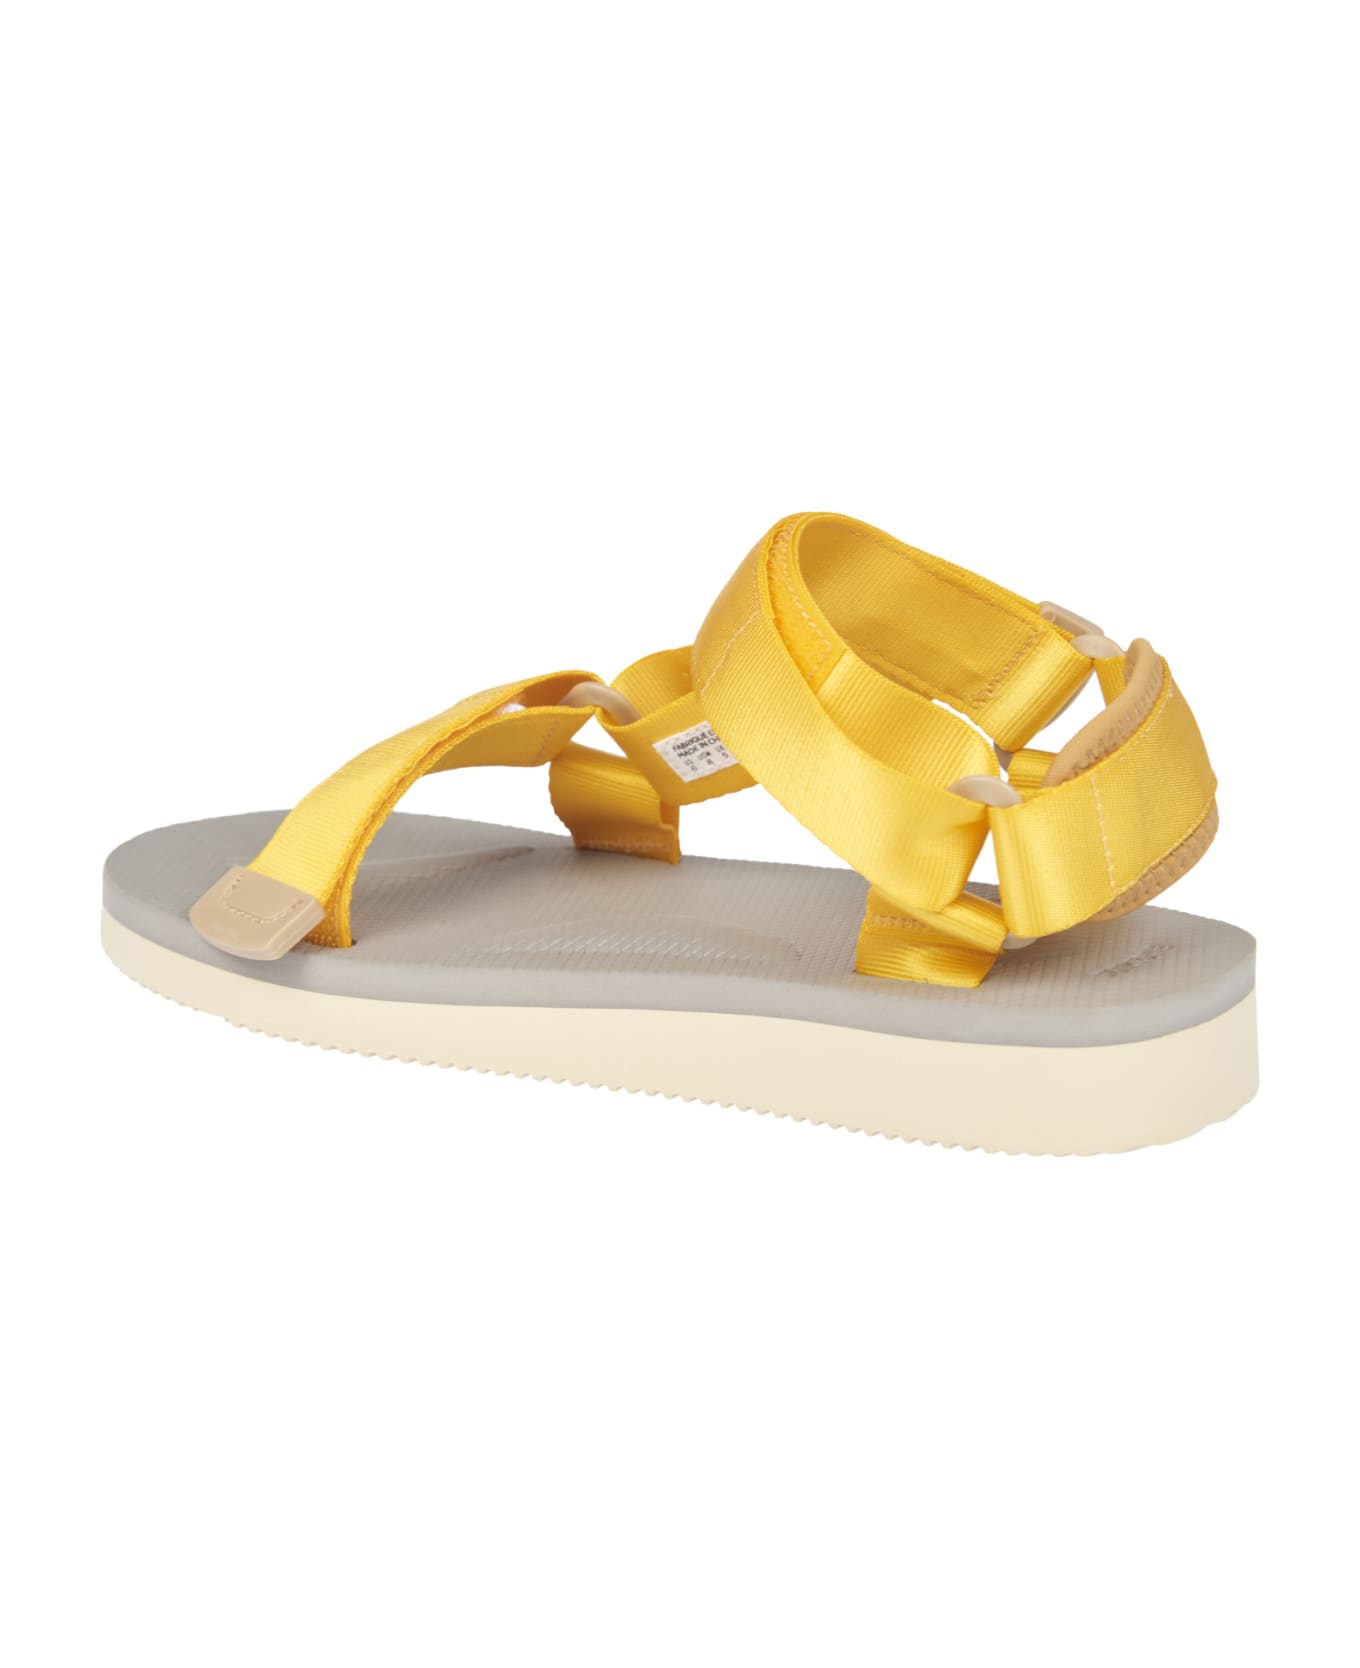 SUICOKE Slides - Yellow